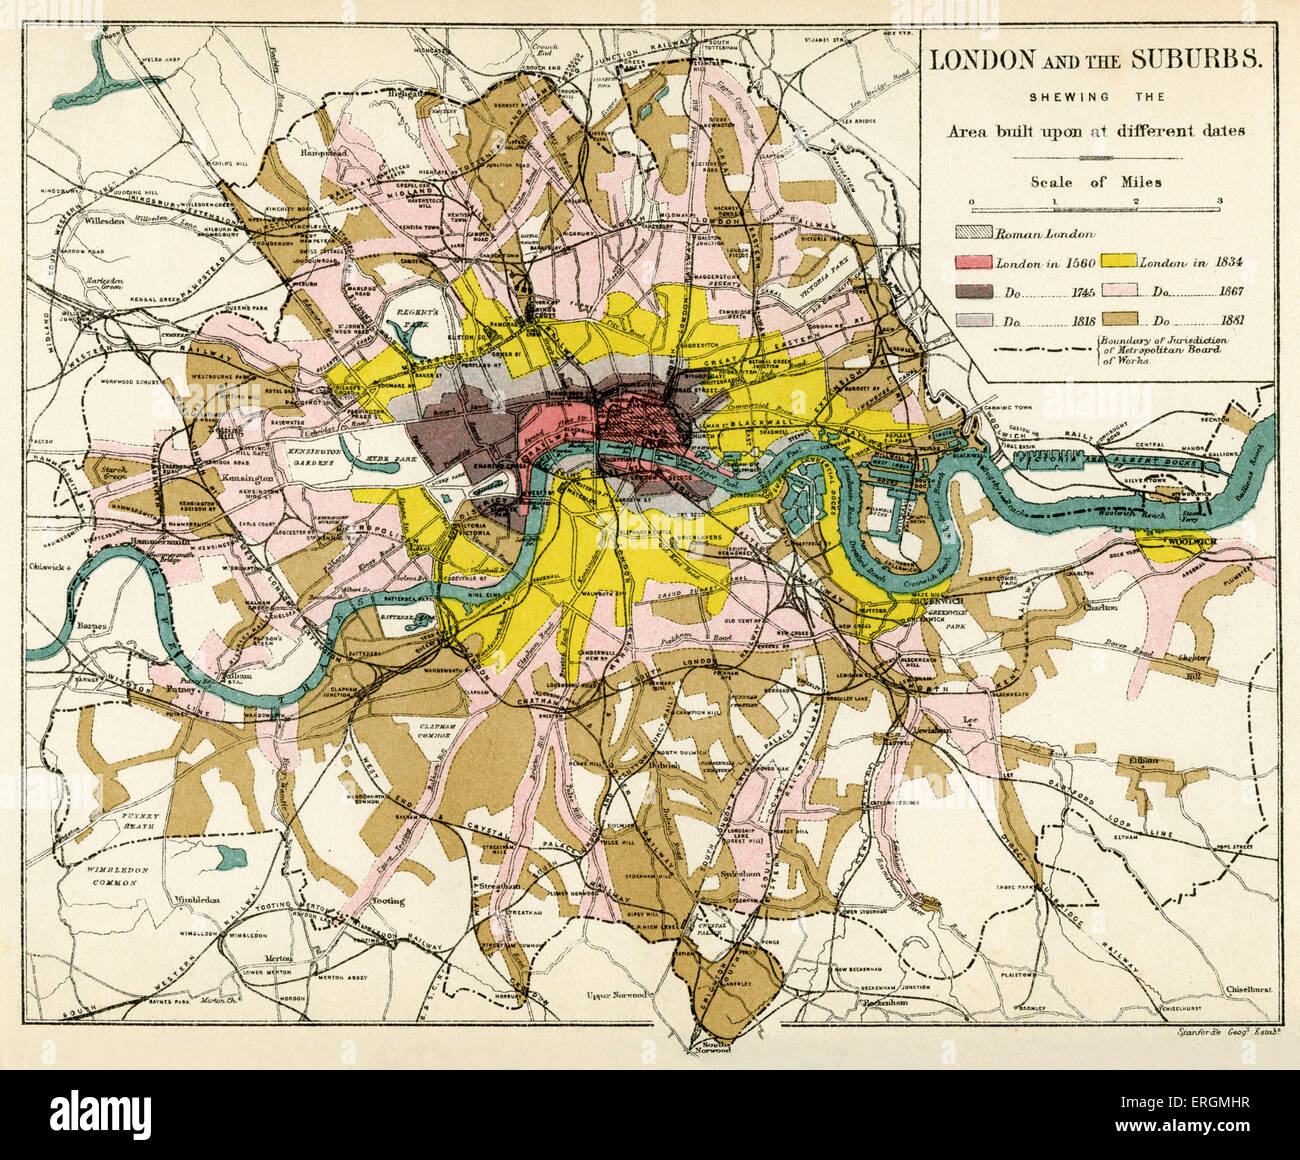 London und seine Vororte, 1894. Ausbau der Londoner Vorstadt, aus der Stadt, von 1560 bis 1881 zeigt. Stockfoto